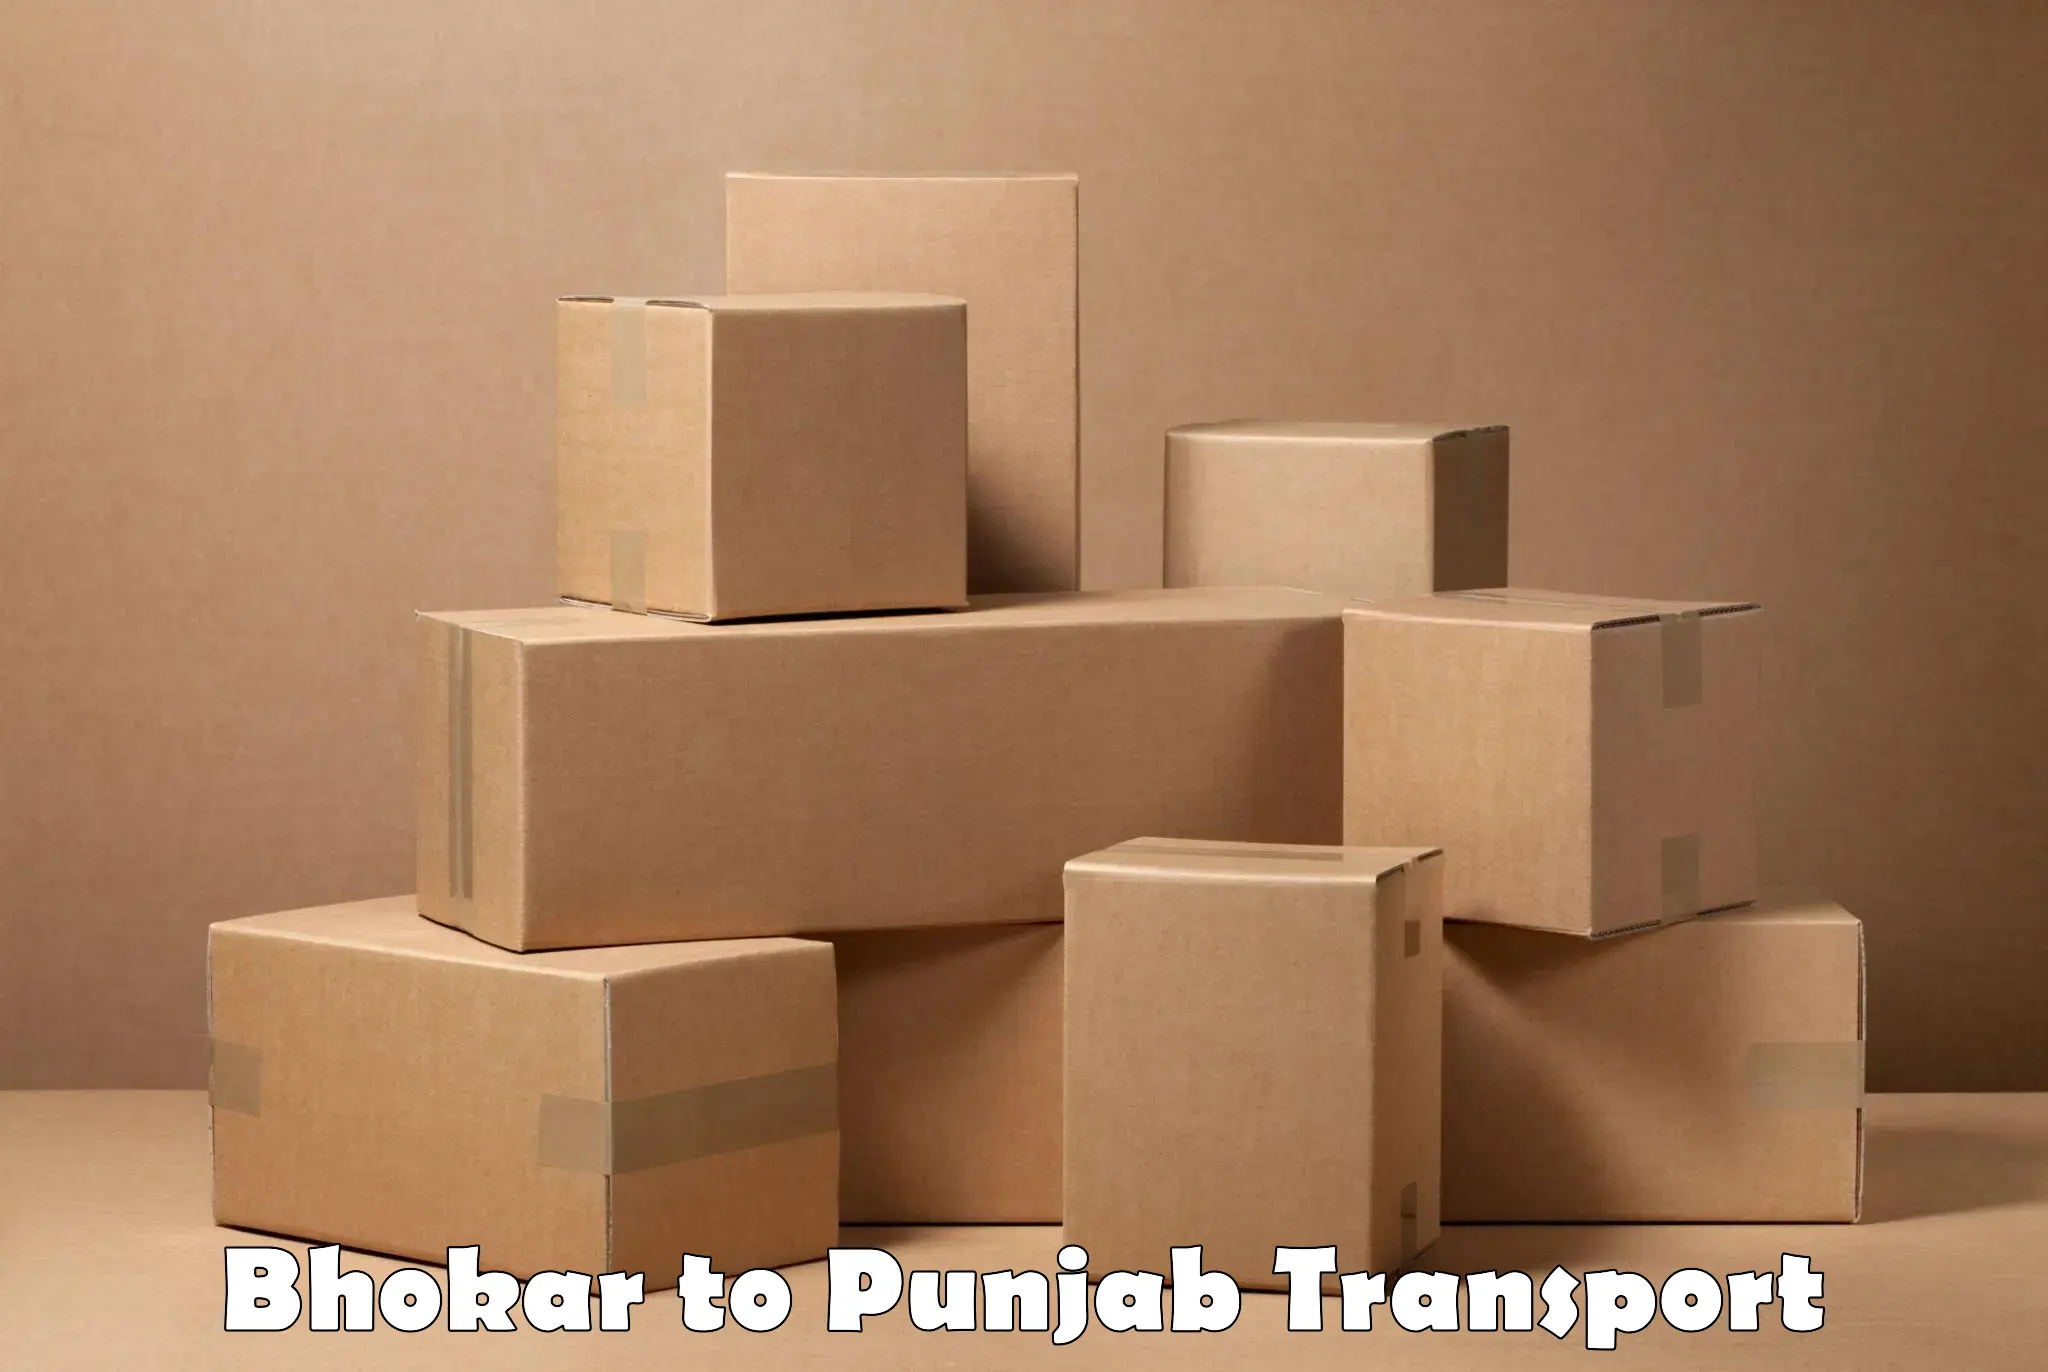 Commercial transport service Bhokar to Nabha